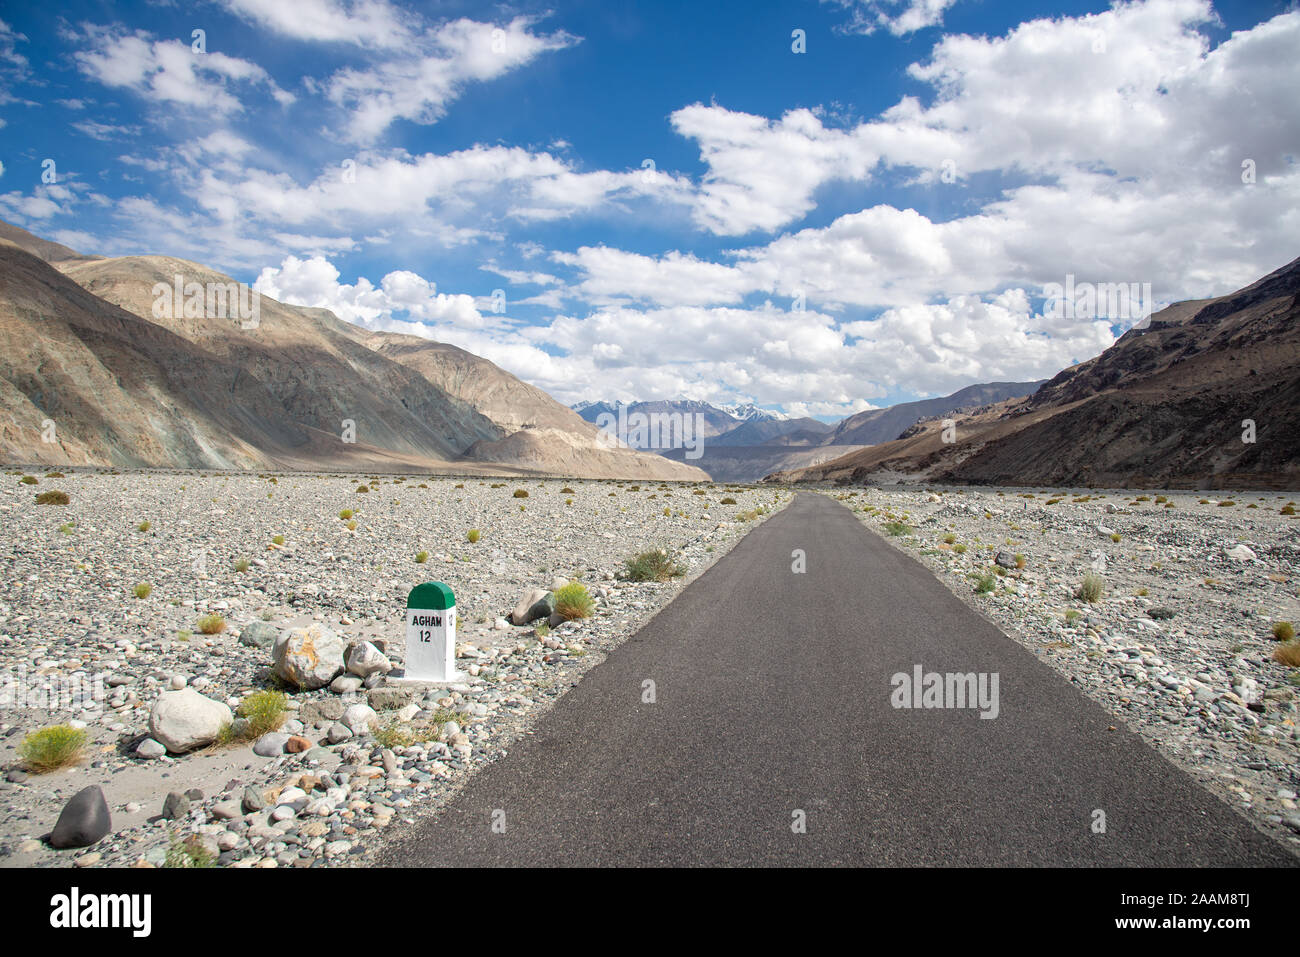 Paysage dans le nord du Ladakh, Inde Banque D'Images